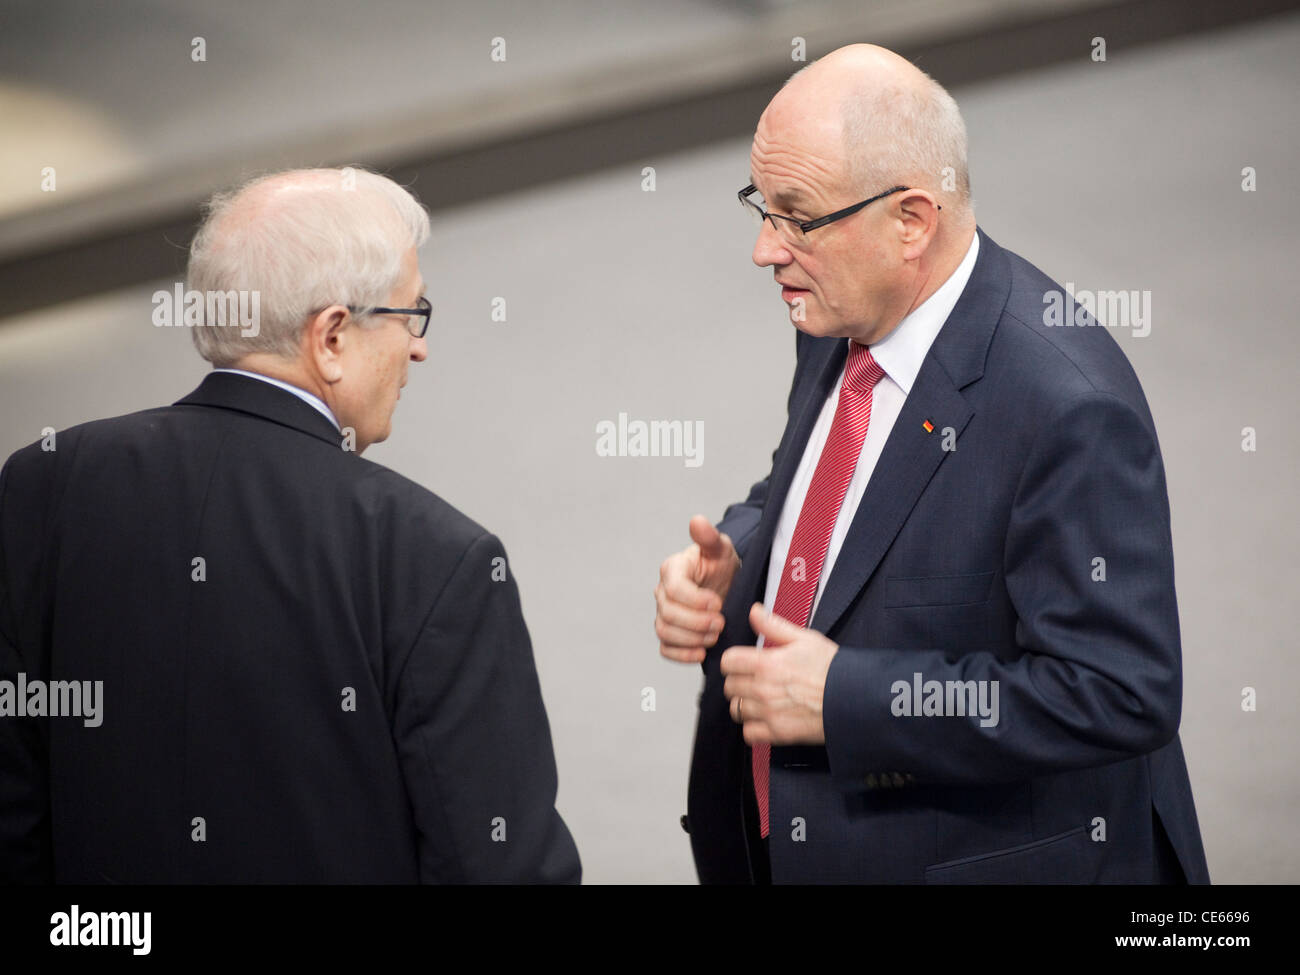 Rainer Bruederle, FDP Fraktionsvorsitzender und Volker Kauder, CDU/CSU Fraktionsvorsitzender, Plenum im des Deutschen Bundestage Foto de stock